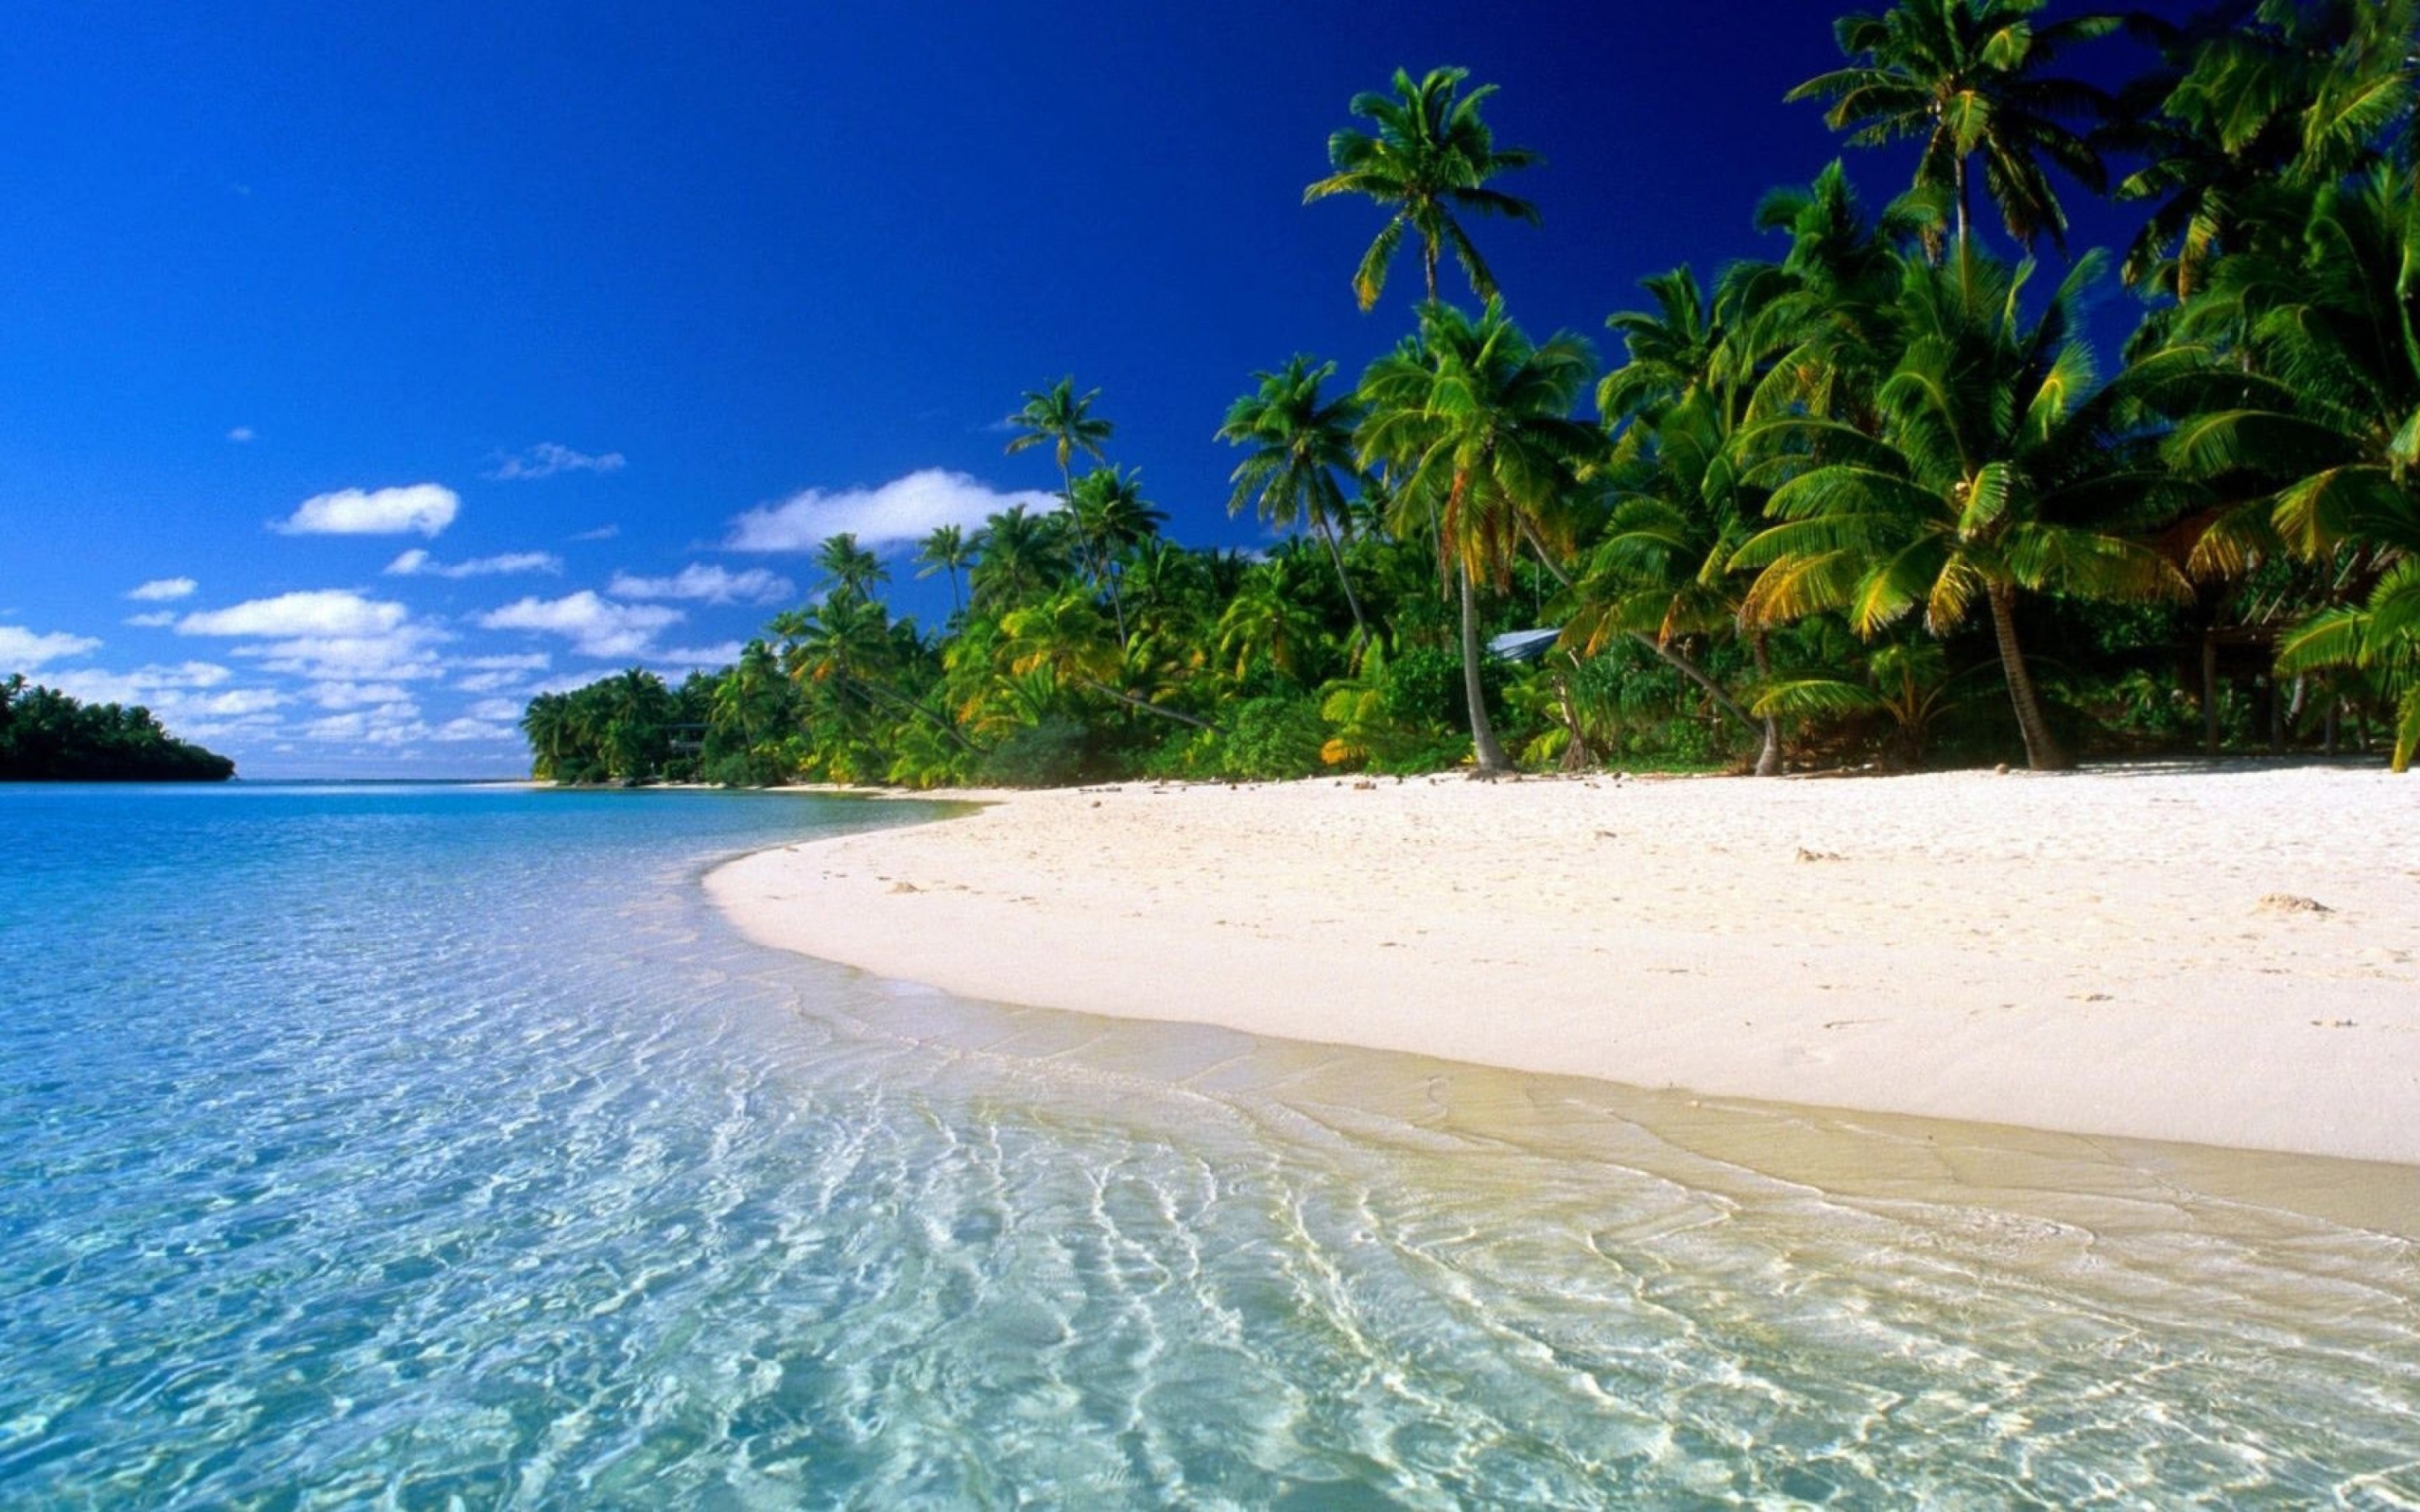 прозрачное море, лазурный берег, пальмы, песок, тропики, пейзаж, лето, отдых, синее небо, mer claire, côte d'azur, palmiers, sable, tropiques, paysage, été, vacances, ciel bleu